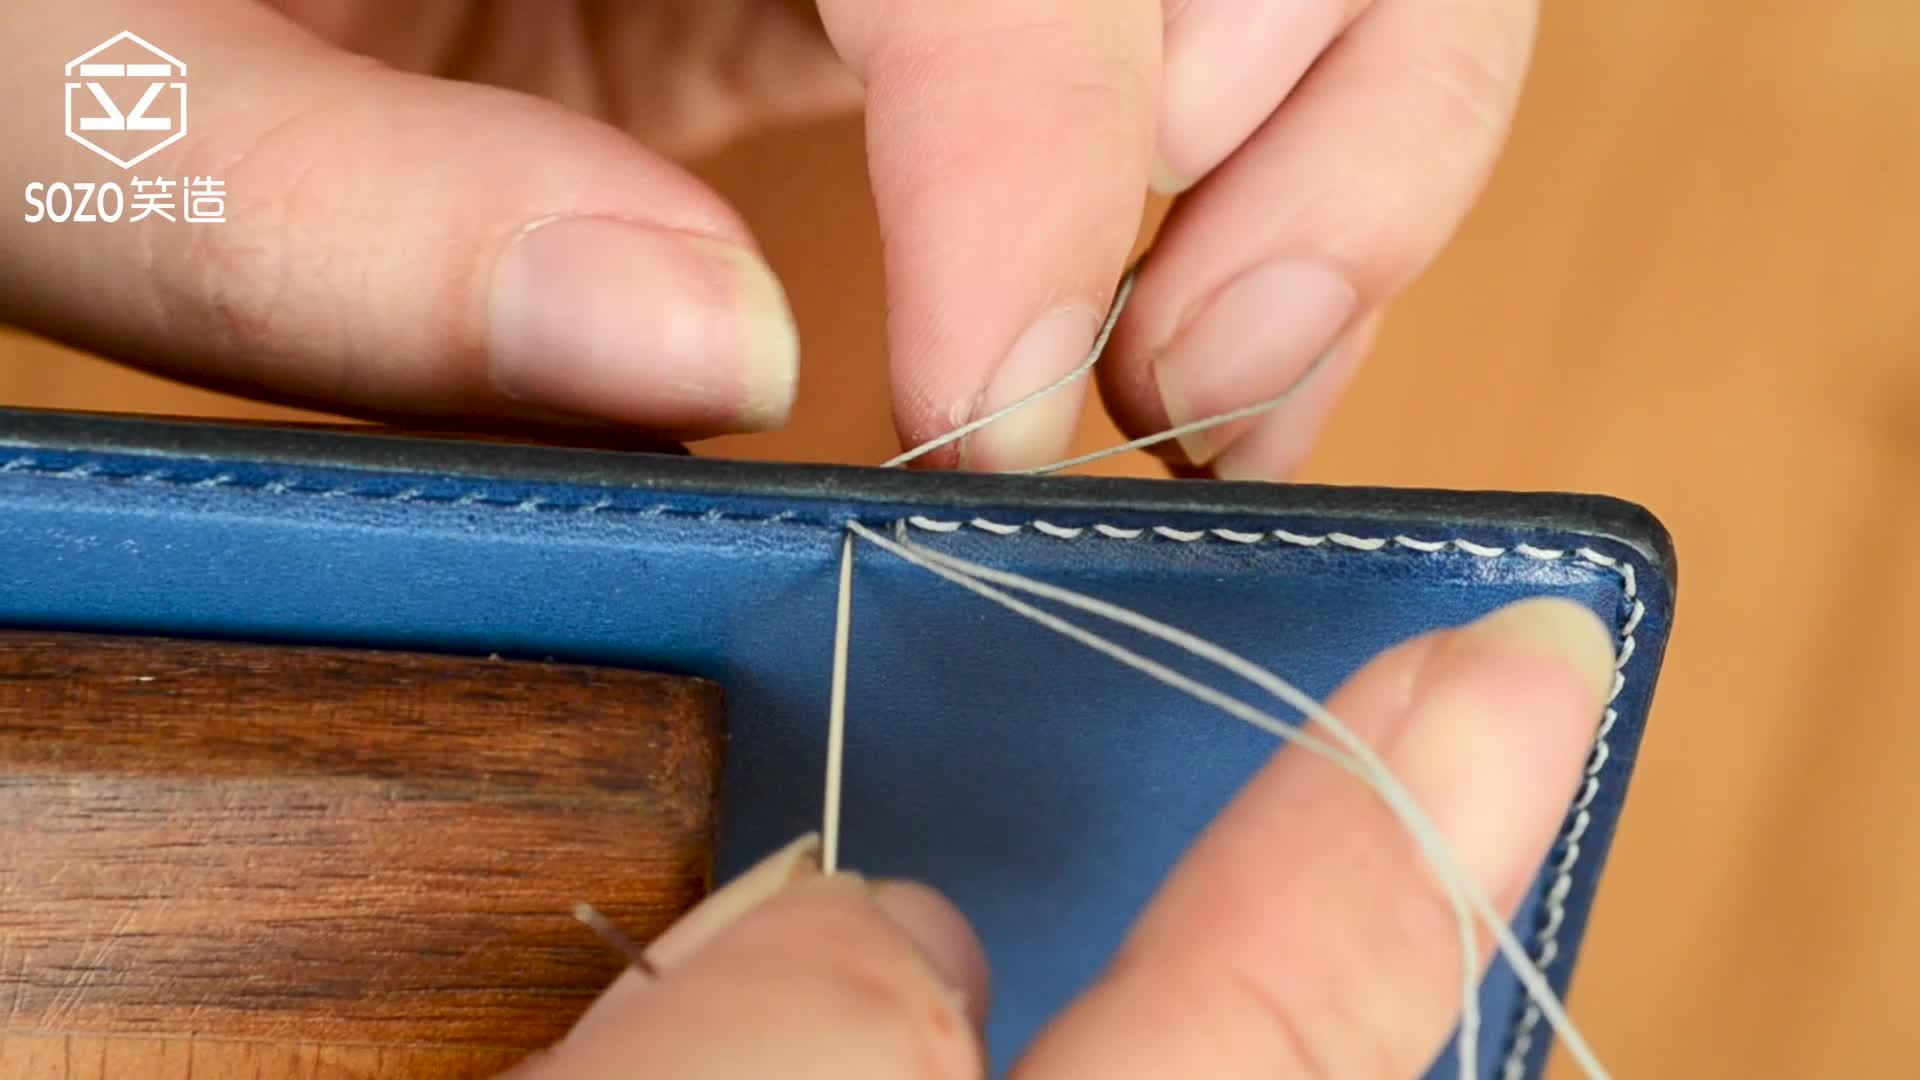 手工皮匠 1 人 赞同了该文章 皮具制作中,最常见的一种缝线方式,跟着